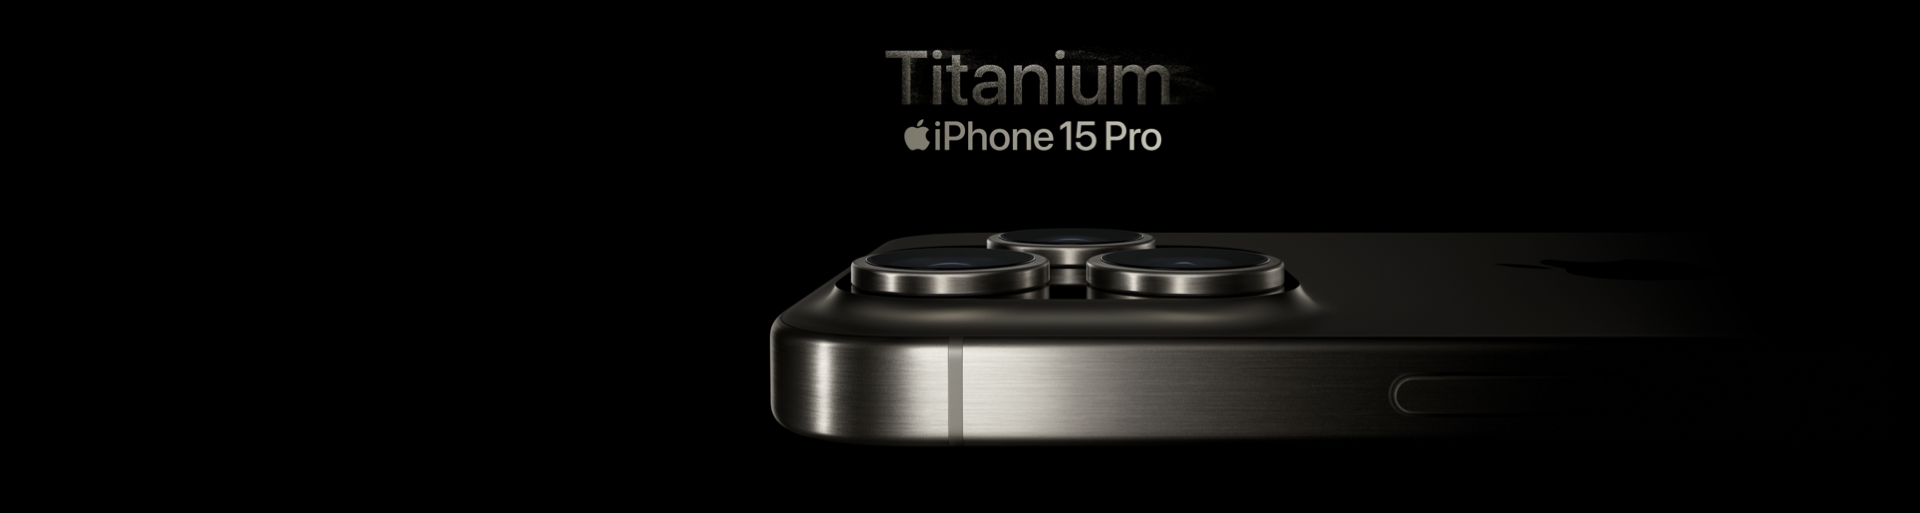 Titanium. iPhone 15 Pro